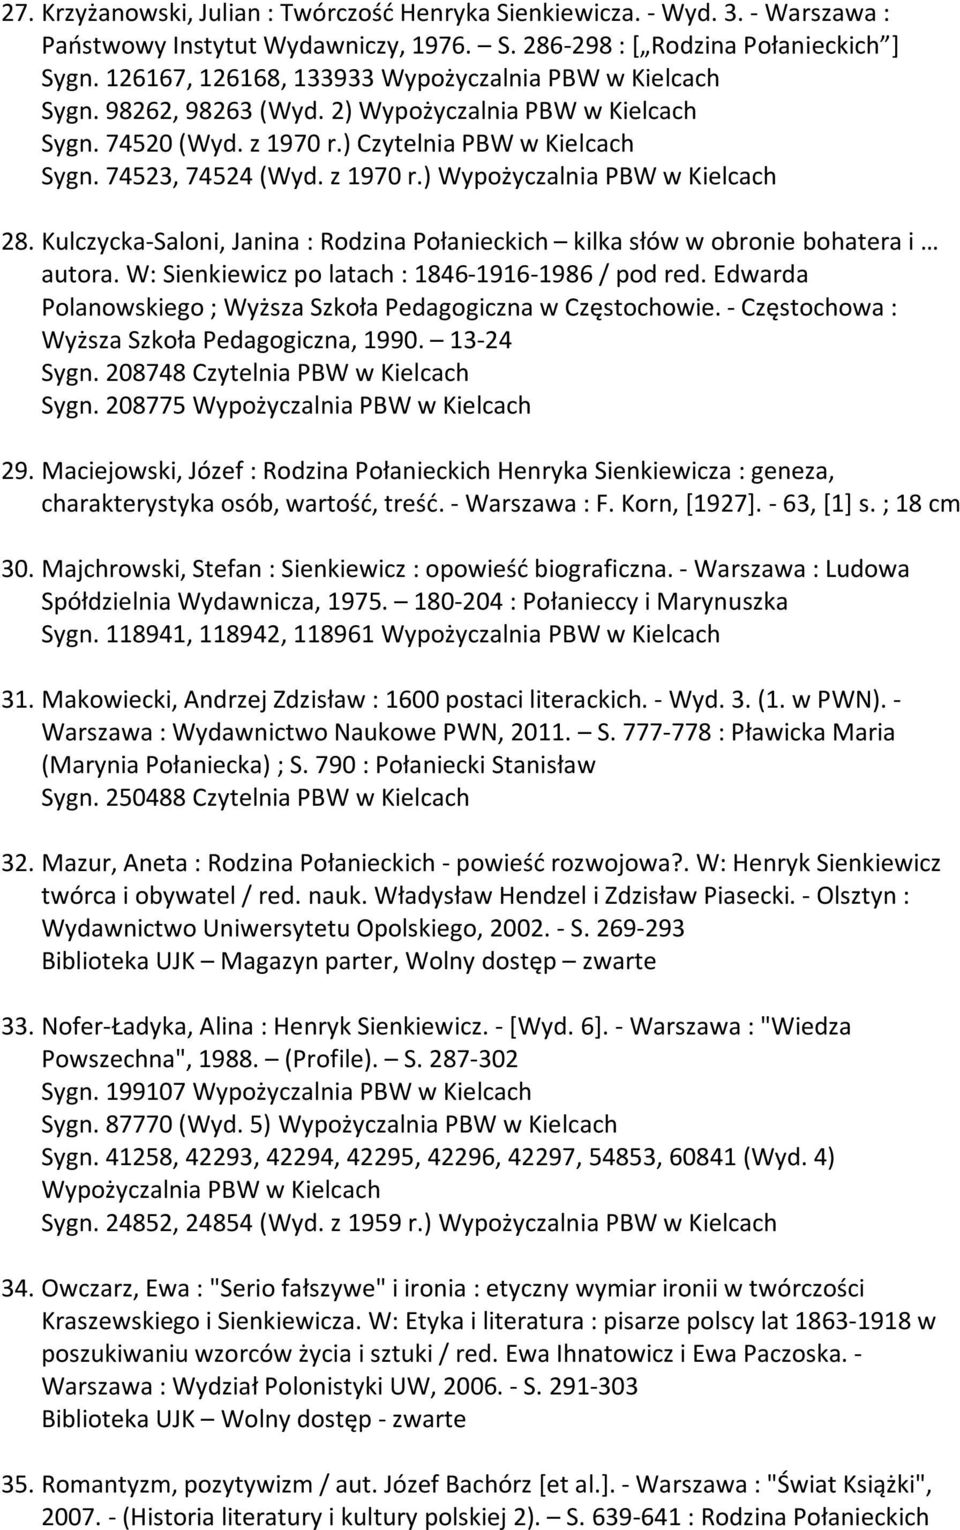 Kulczycka-Saloni, Janina : Rodzina Połanieckich kilka słów w obronie bohatera i autora. W: Sienkiewicz po latach : 1846-1916-1986 / pod red.